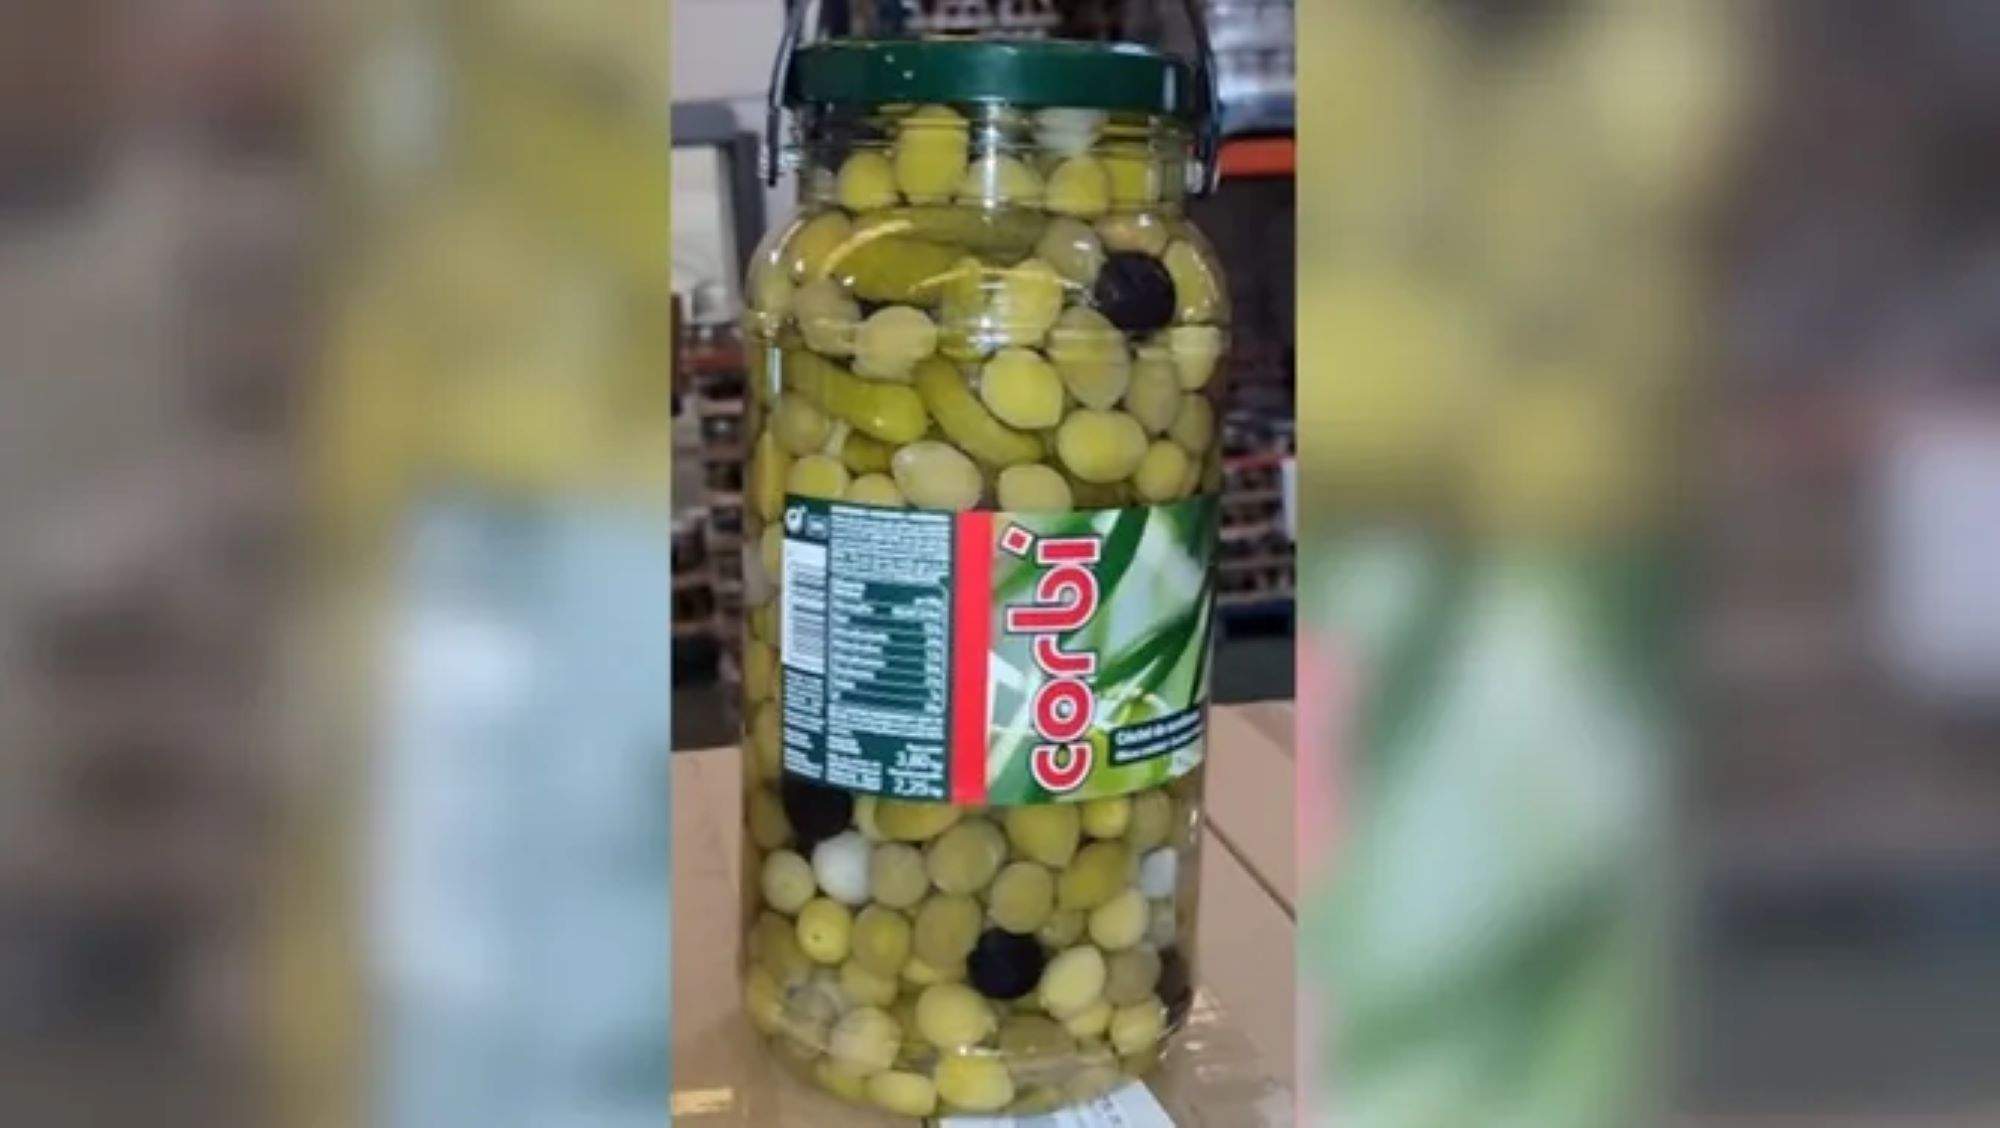 Alerta alimentària: detecten ingredients no aptes per al consum humà en pots d’olives i piparres